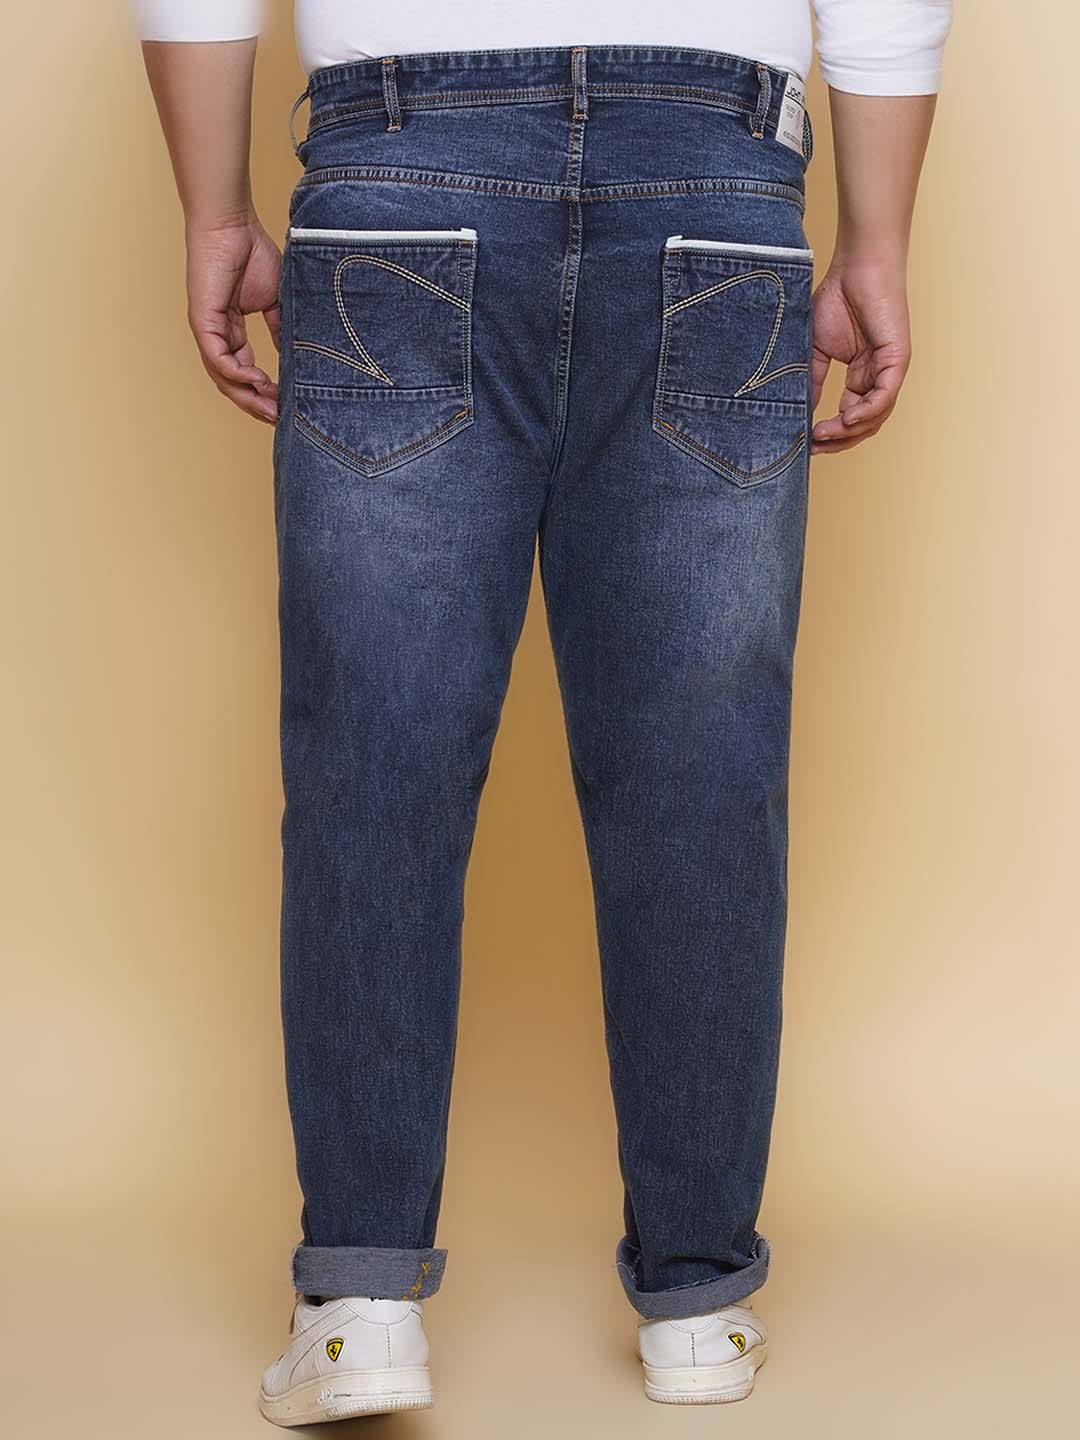 bottomwear/jeans/EJPJ25133/ejpj25133-5.jpg